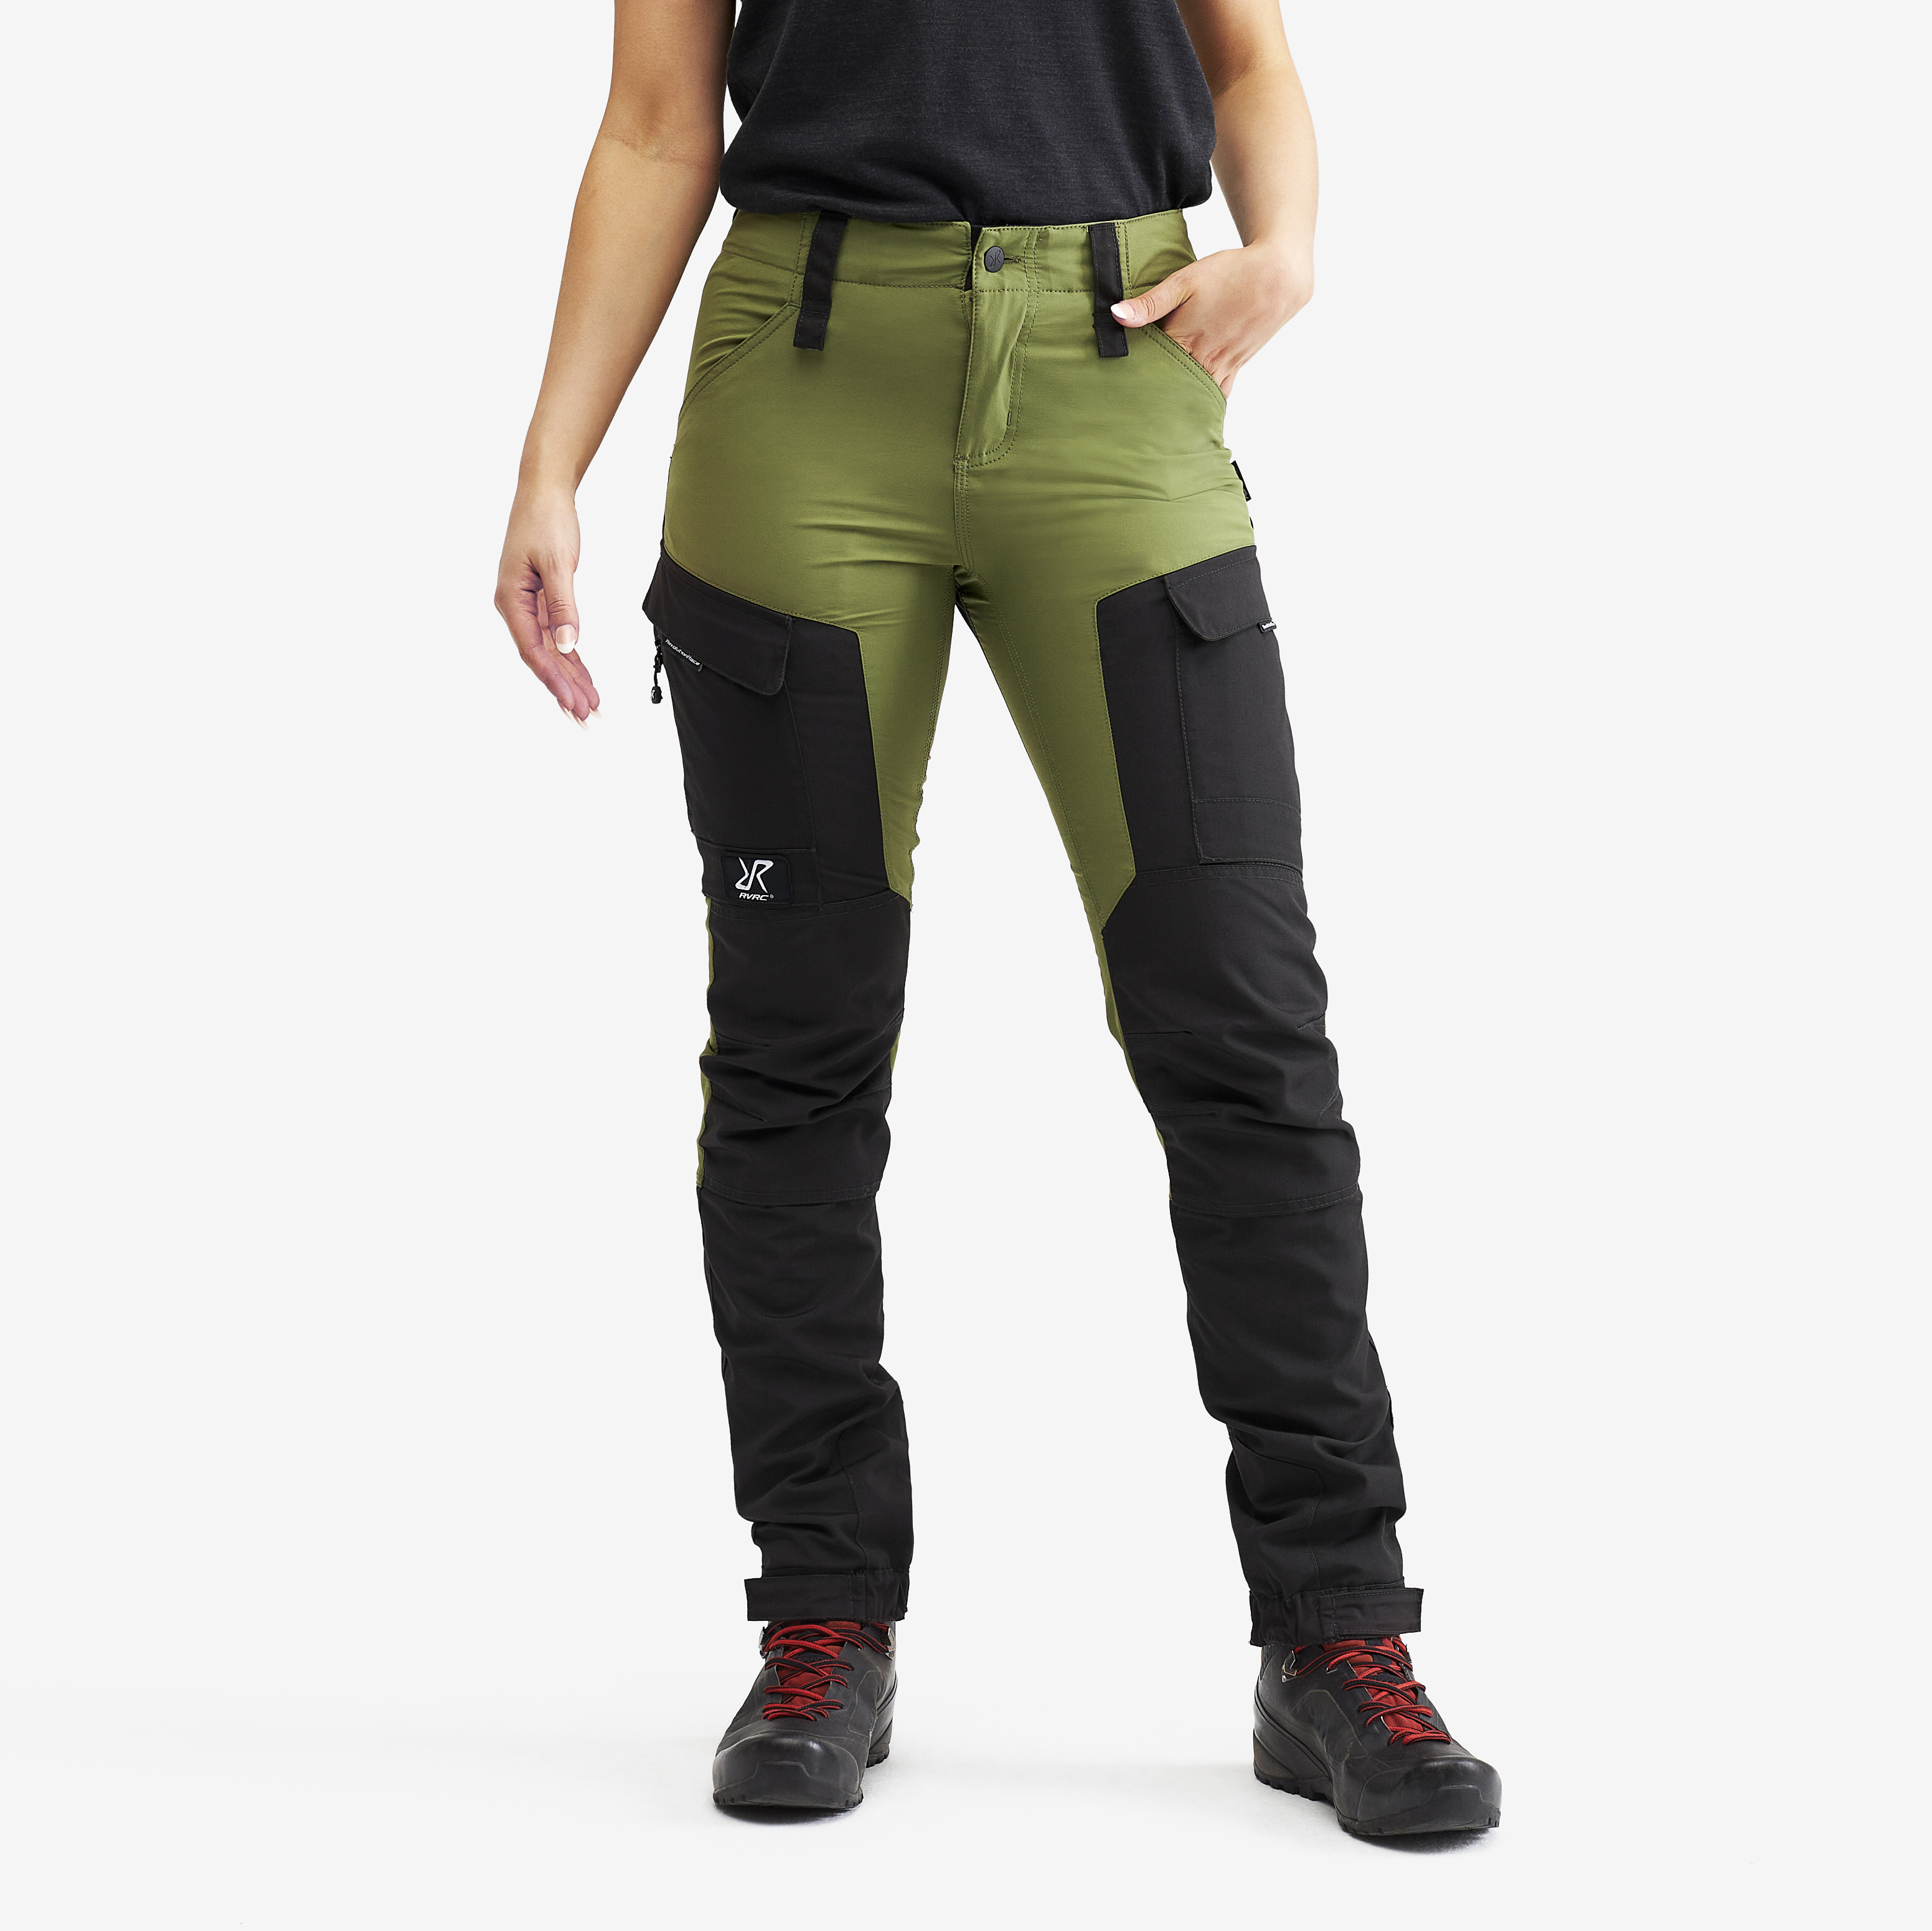 RVRC GP outdoor bukser for kvinder i grøn